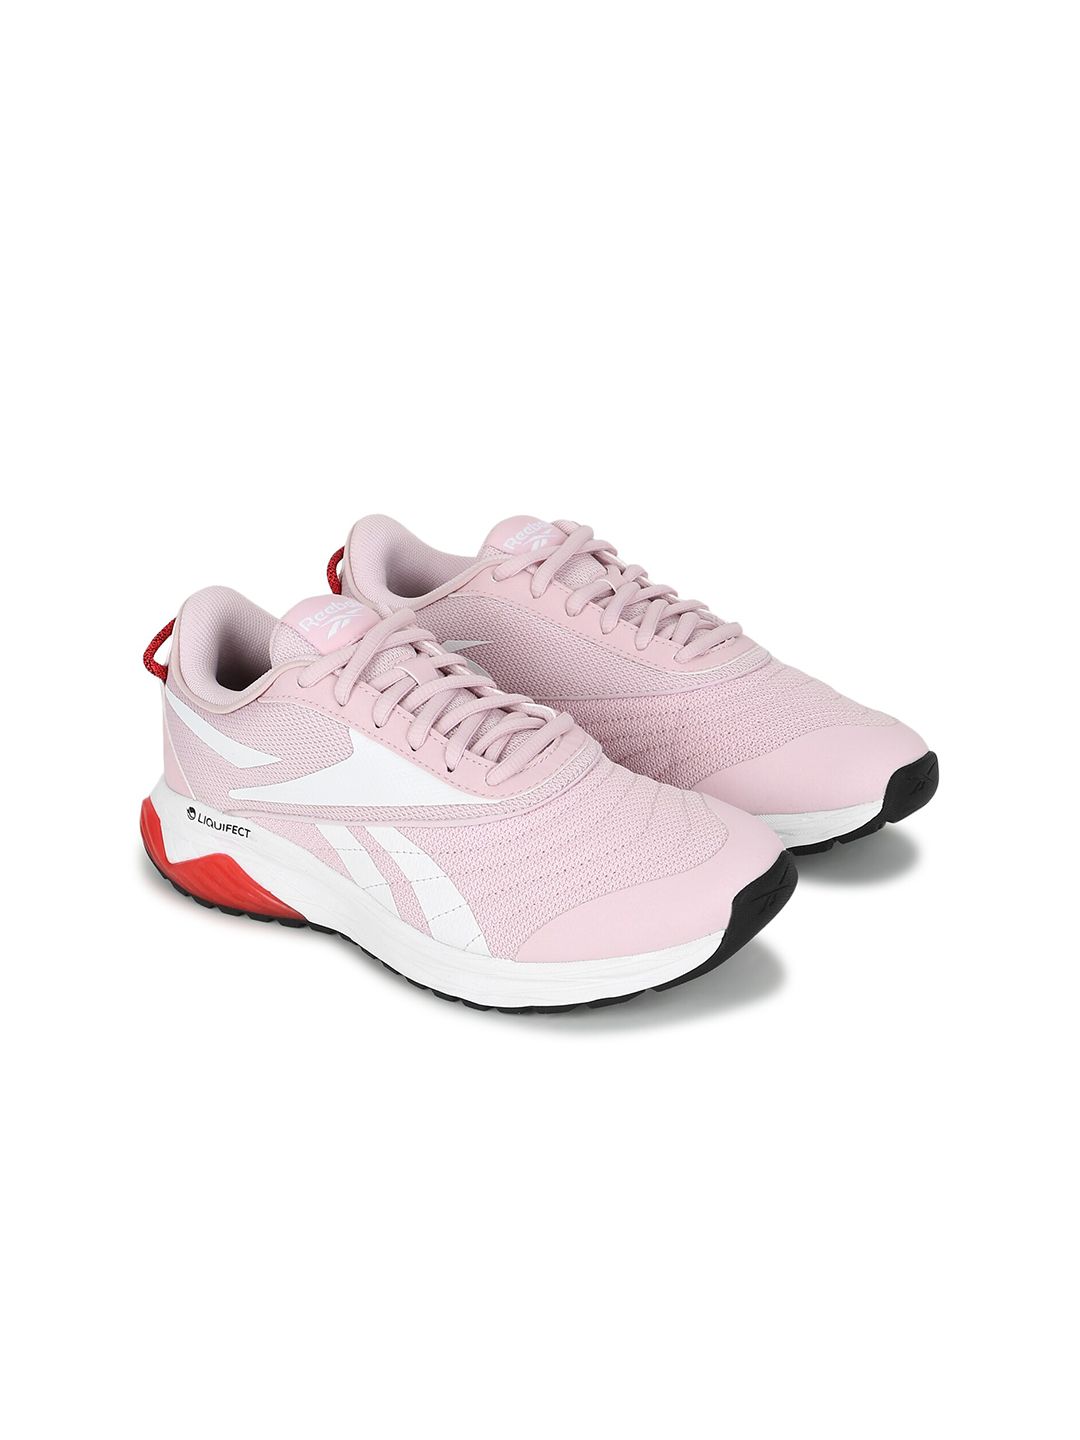 Reebok Women Pink Running Shoes Price in India